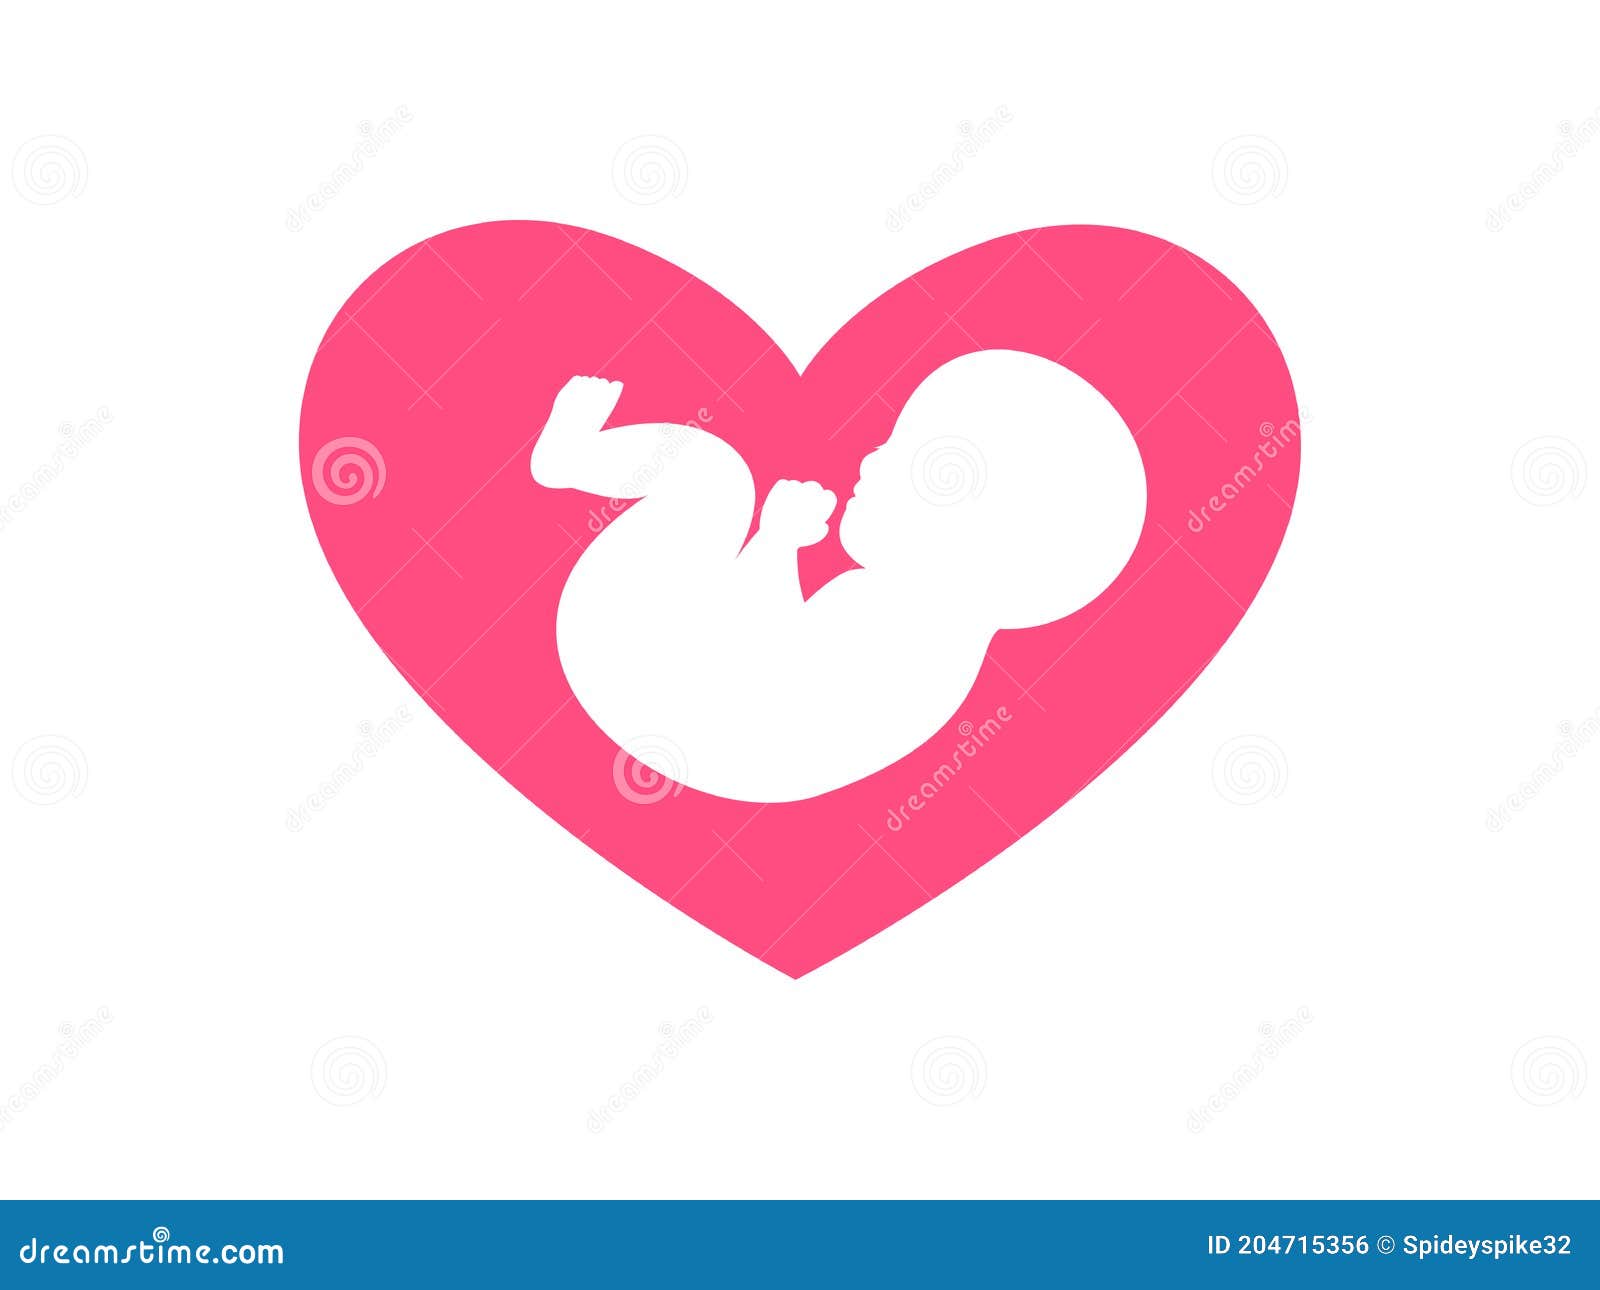 Hãy nhấp vào hình bóng em bé trong nền hồng trái tim để trông thấy vẻ đẹp của những vật liệu trang trí yêu thích của đứa trẻ. Với hình ảnh đáng yêu này, bạn sẽ chắc chắn tìm được một món quà đặc biệt cho con của mình.